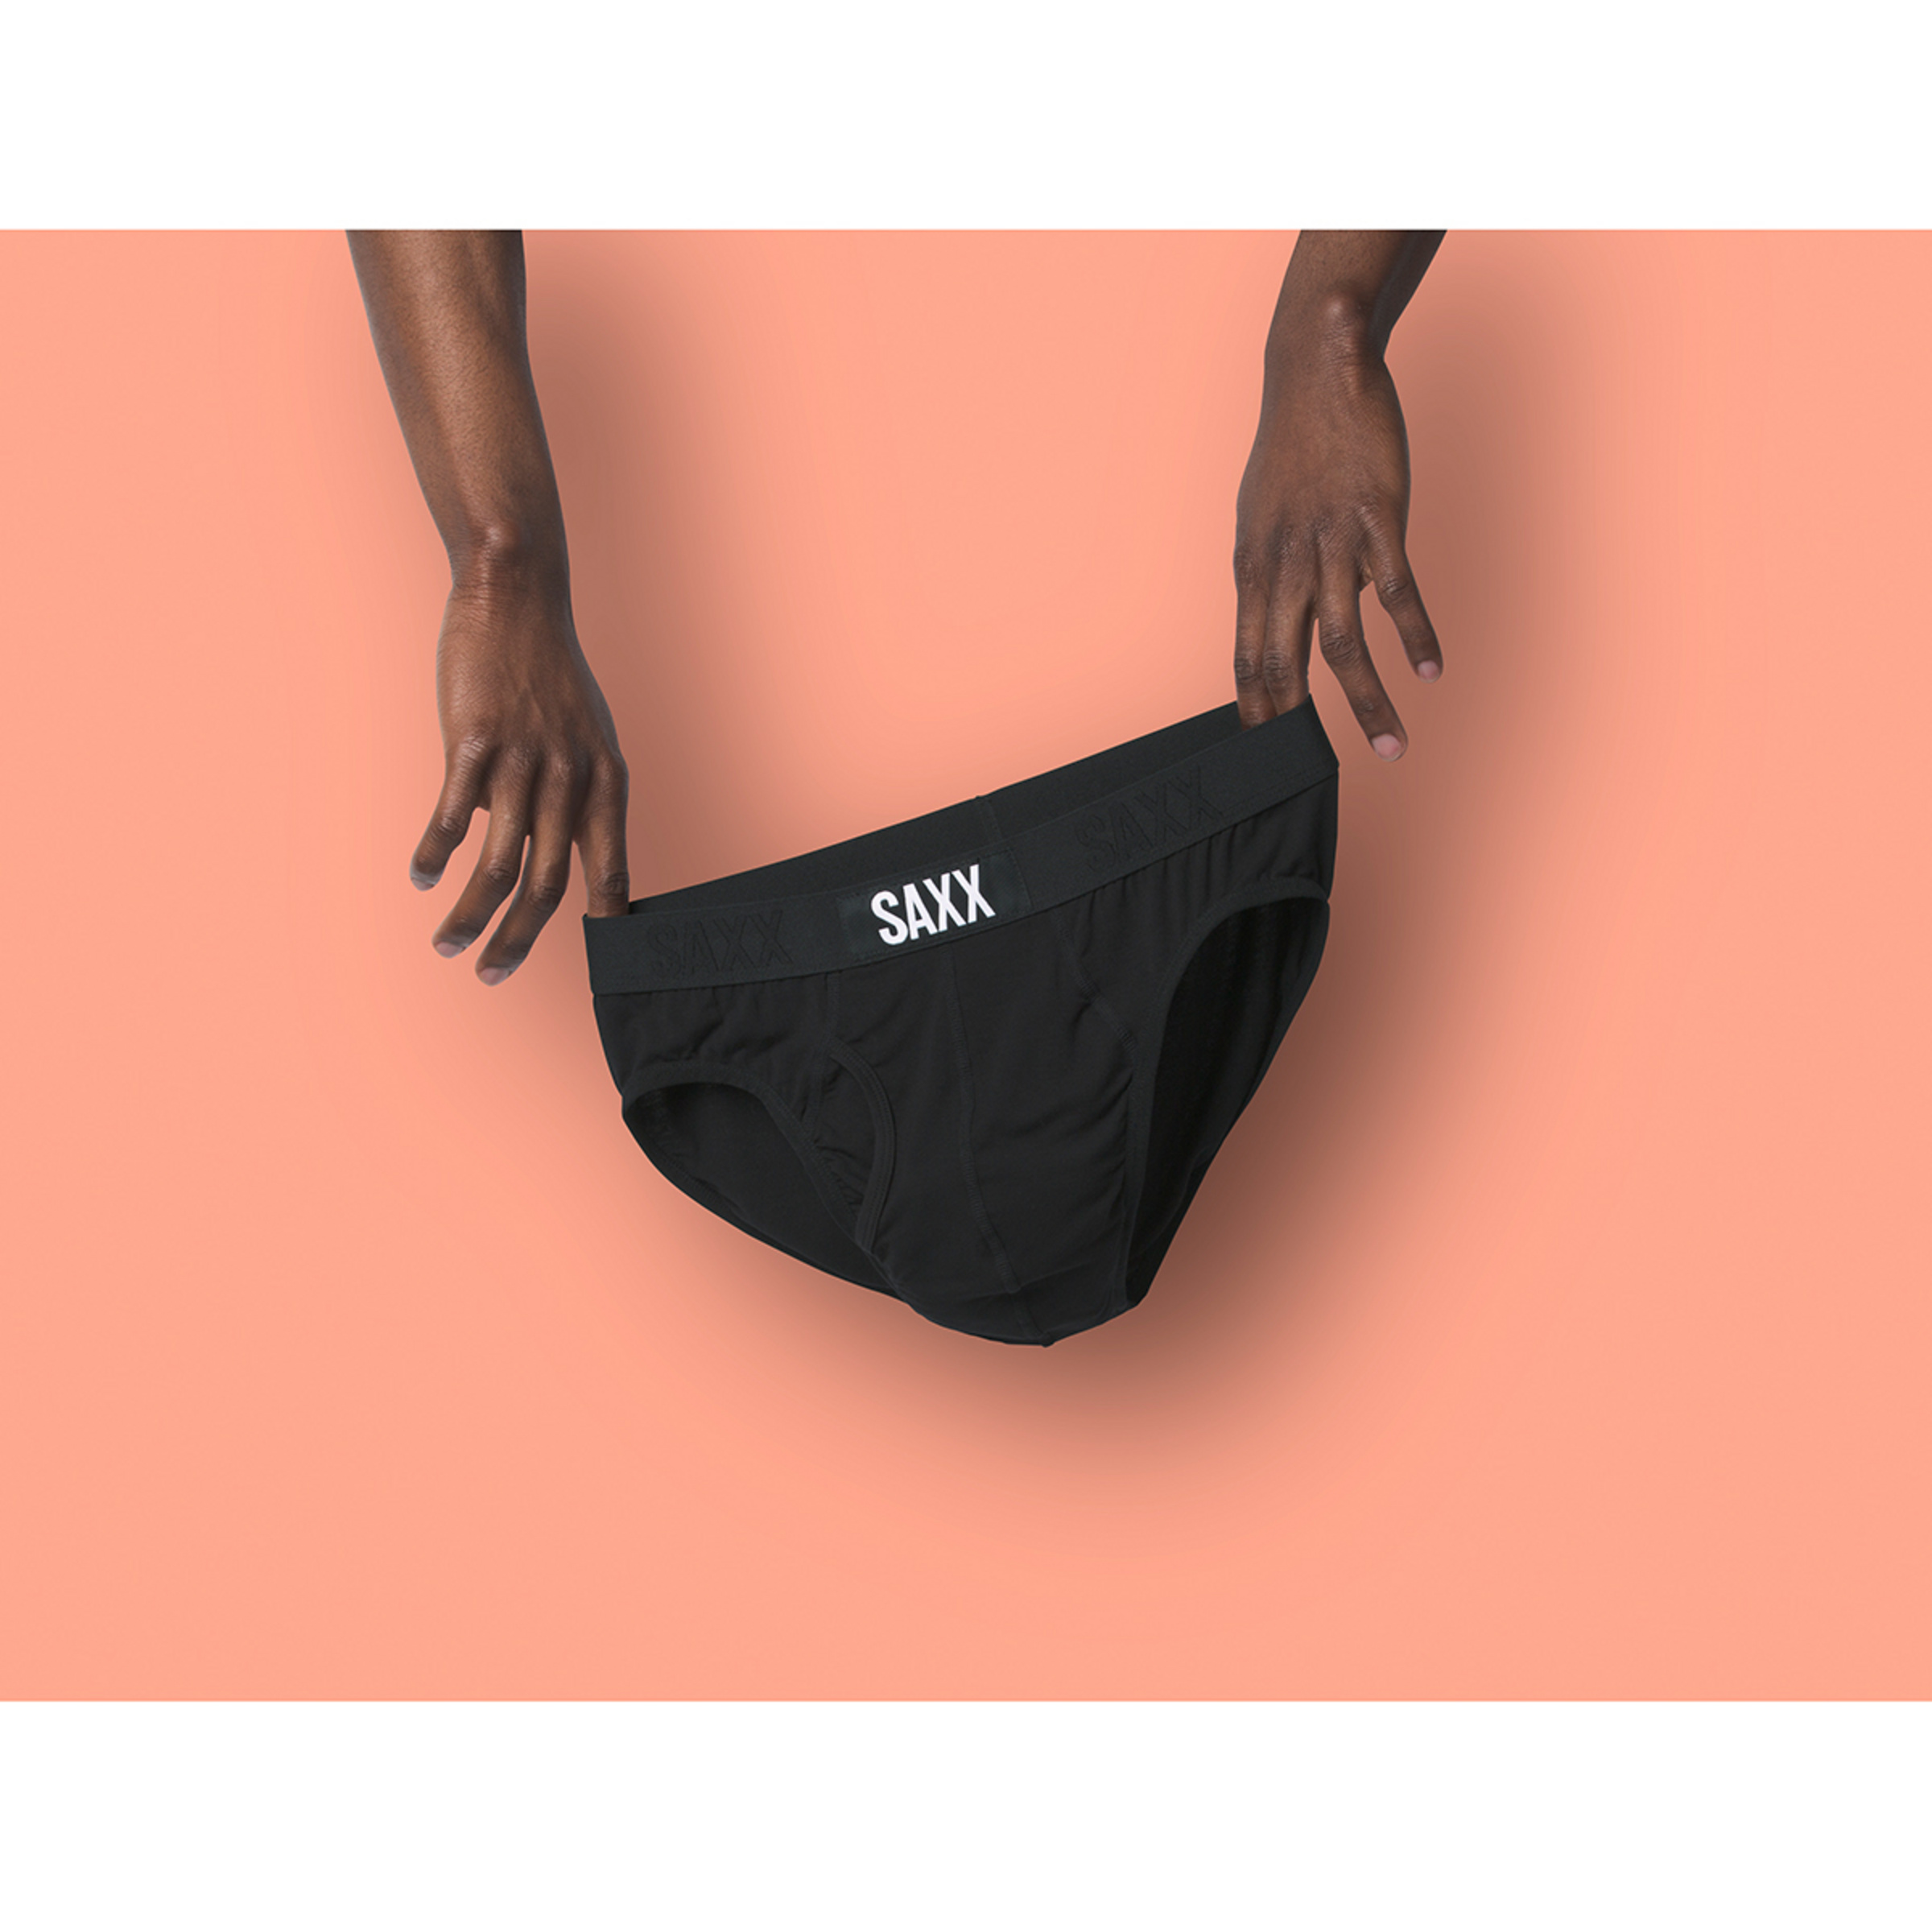 Saxx Underwear Men's Ultra Brief Fly, Buy online